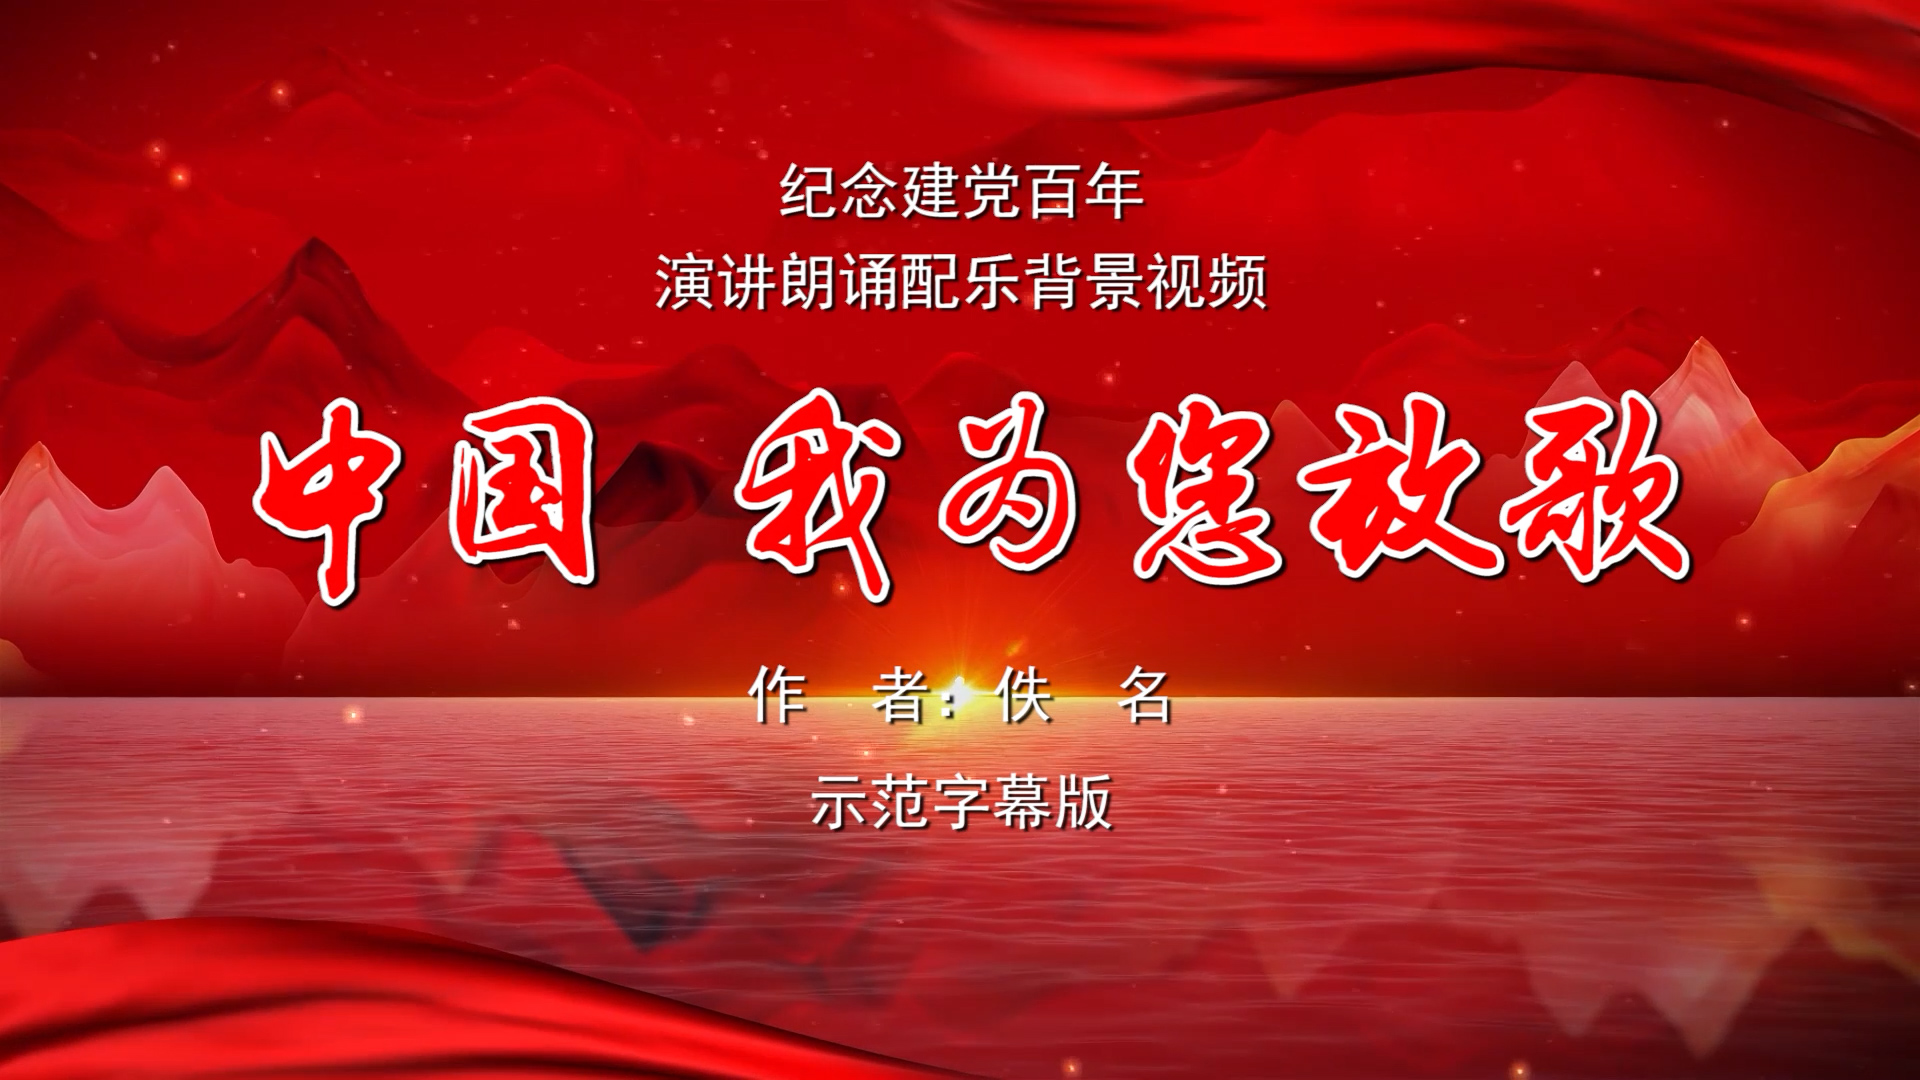 中国我为您放歌 纪念建党百年诗歌朗诵配乐伴奏舞台演出LED背景视频素材TV